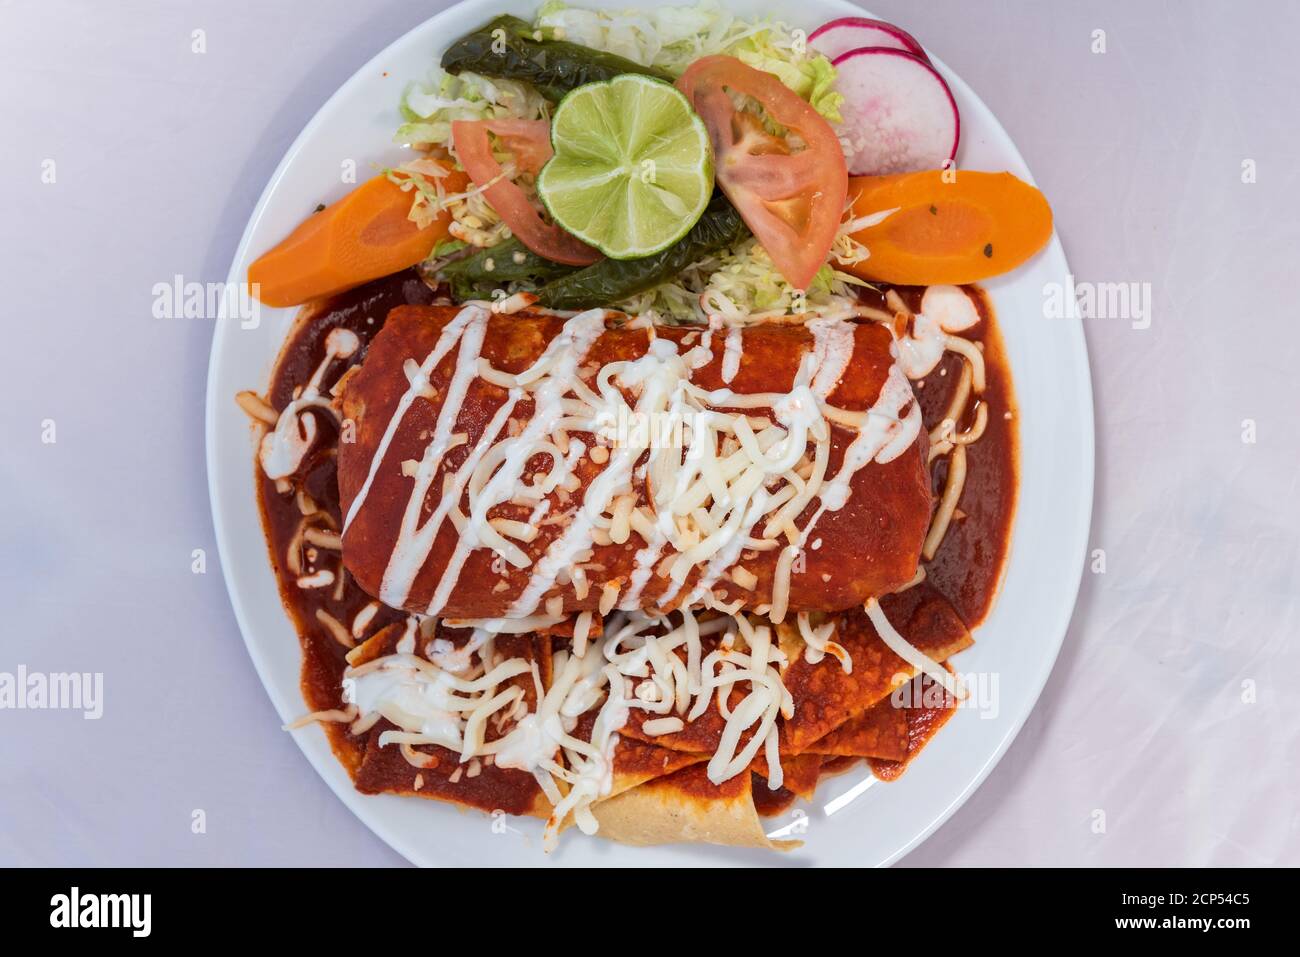 Vue en hauteur du burrito de ranchero humide avec du riz et des haricots servis sur une plaque chaude pour quelques délicieux plats mexicains. Banque D'Images